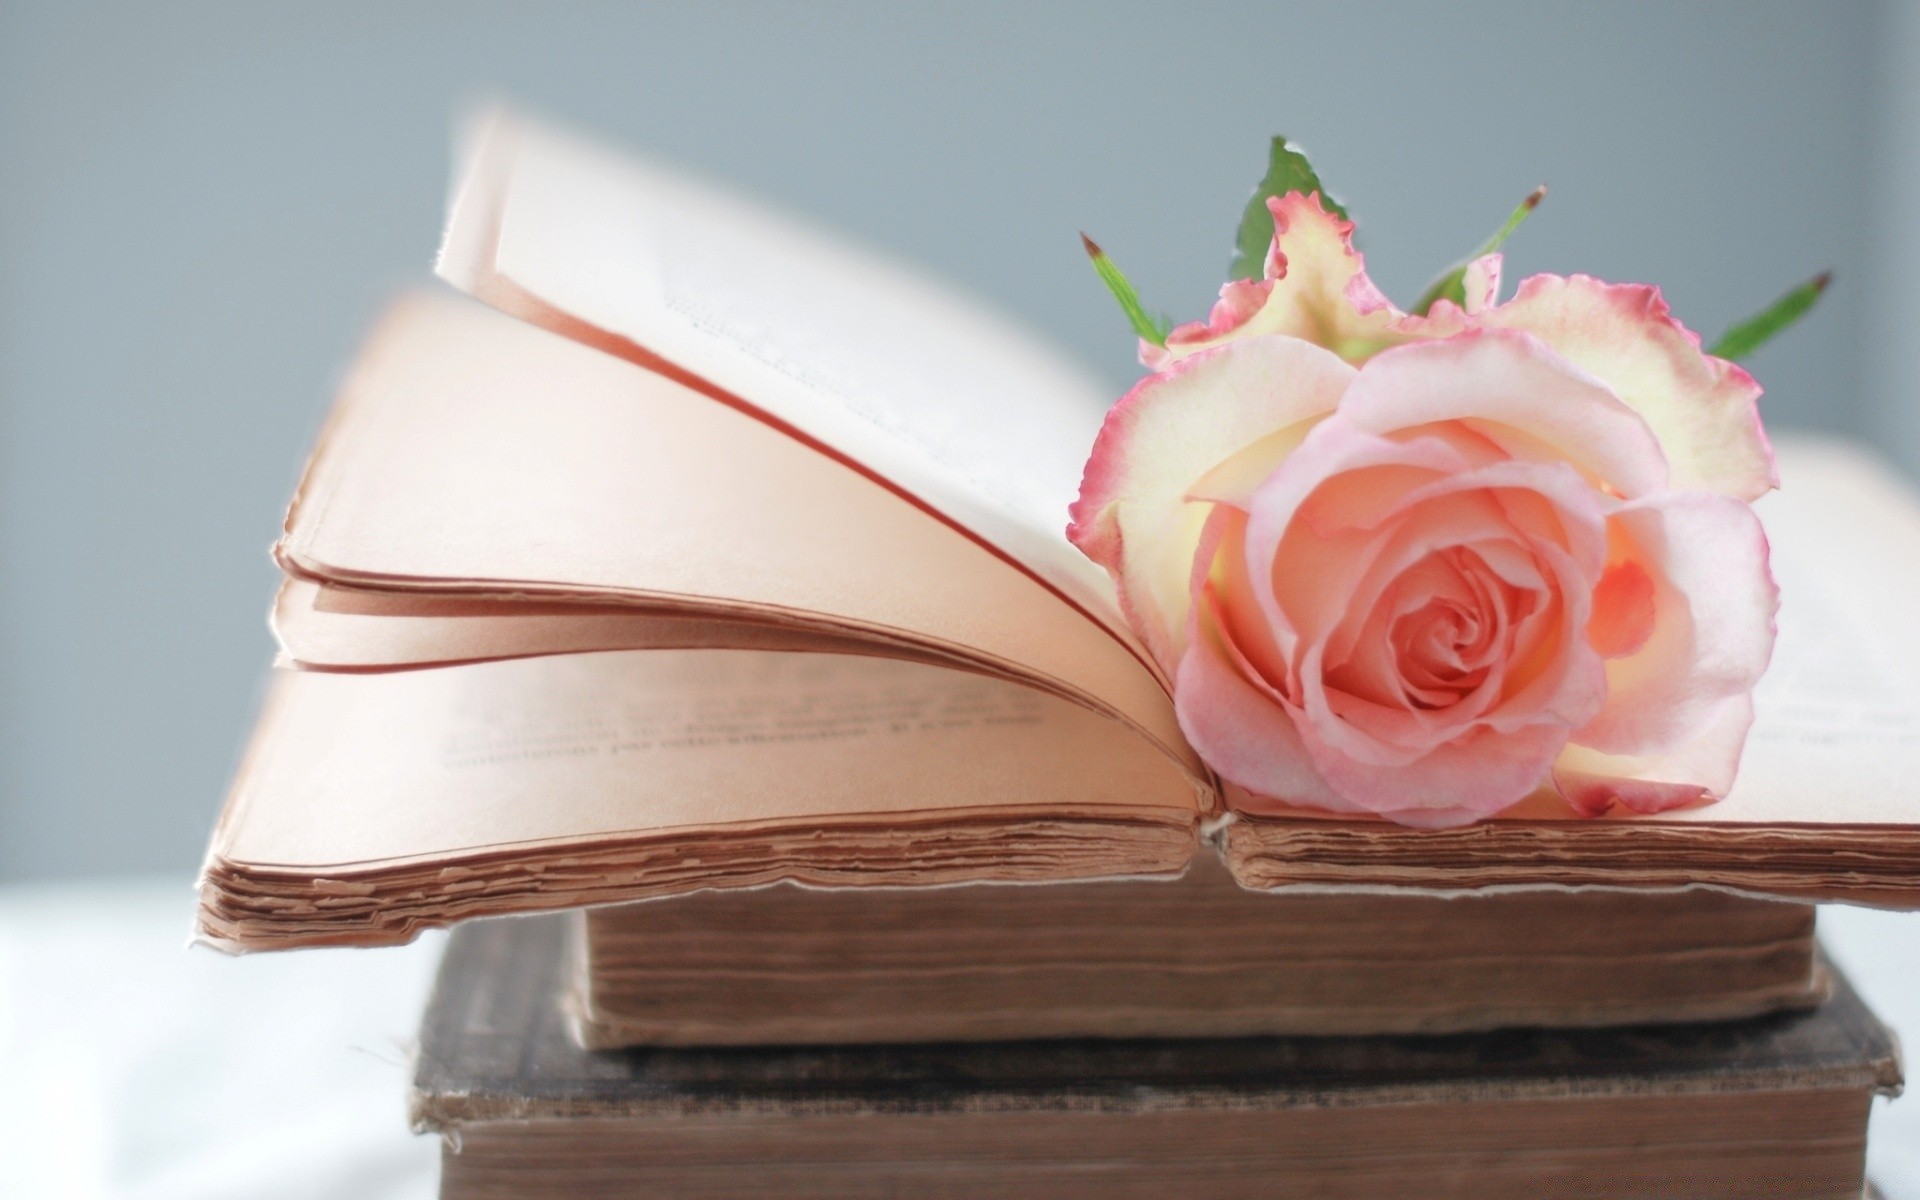 A romantic rose lies in an open book wallpaper